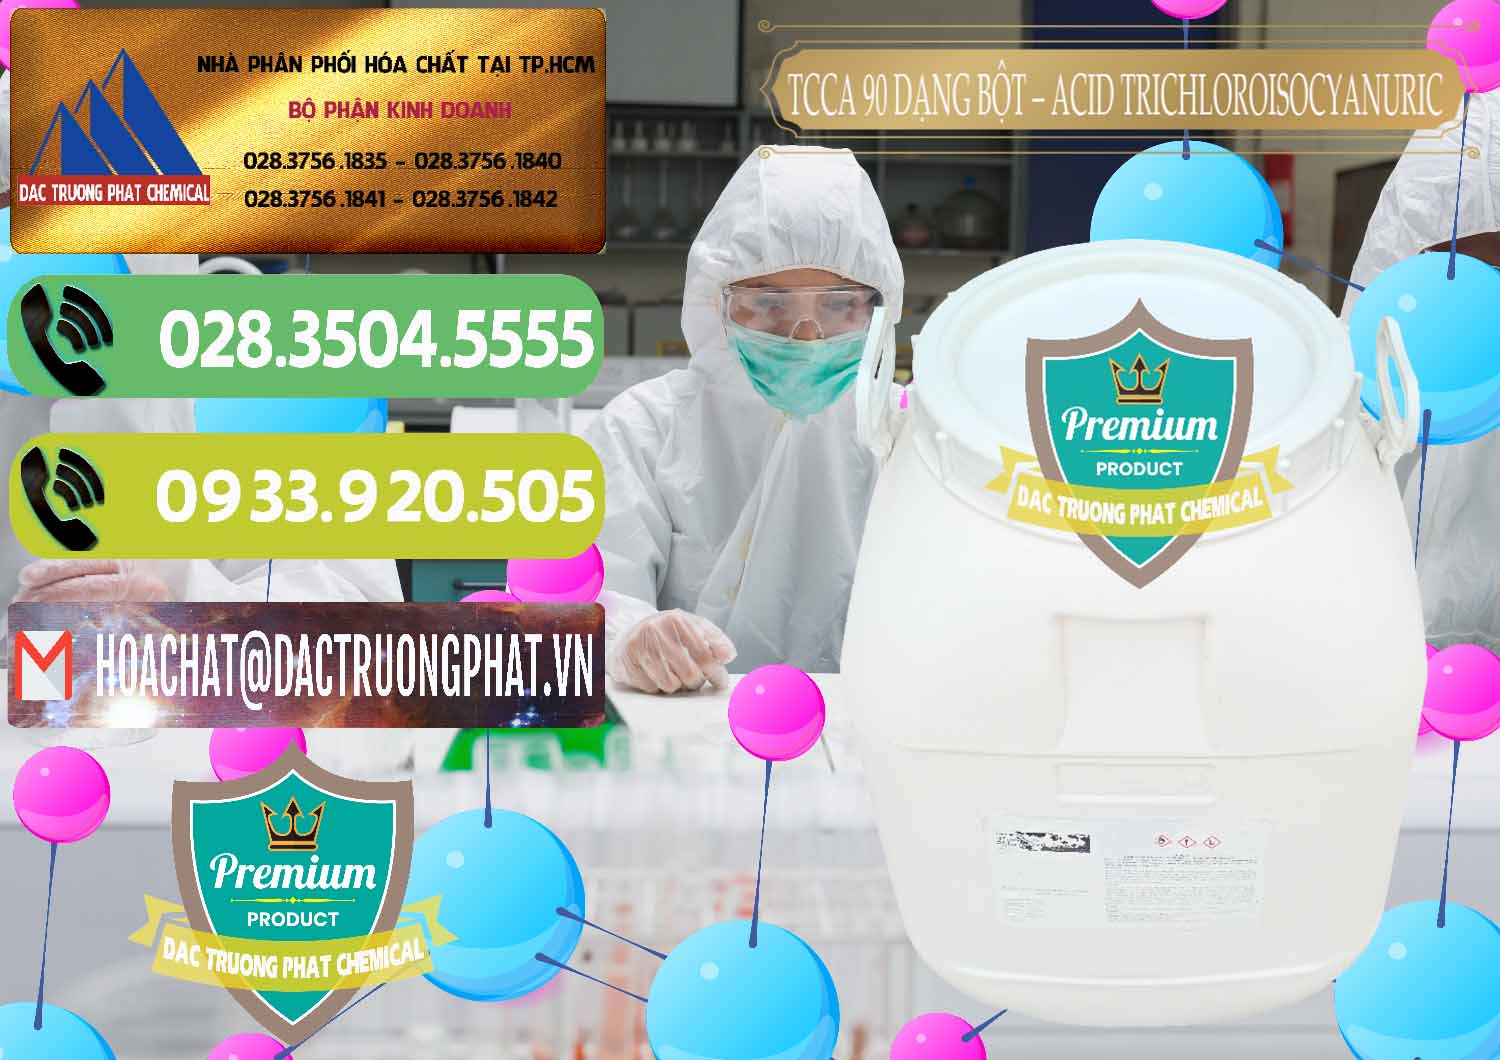 Công ty bán ( cung cấp ) TCCA - Acid Trichloroisocyanuric 90% Dạng Bột Trung Quốc China - 0161 - Công ty kinh doanh - phân phối hóa chất tại TP.HCM - hoachatmientay.vn